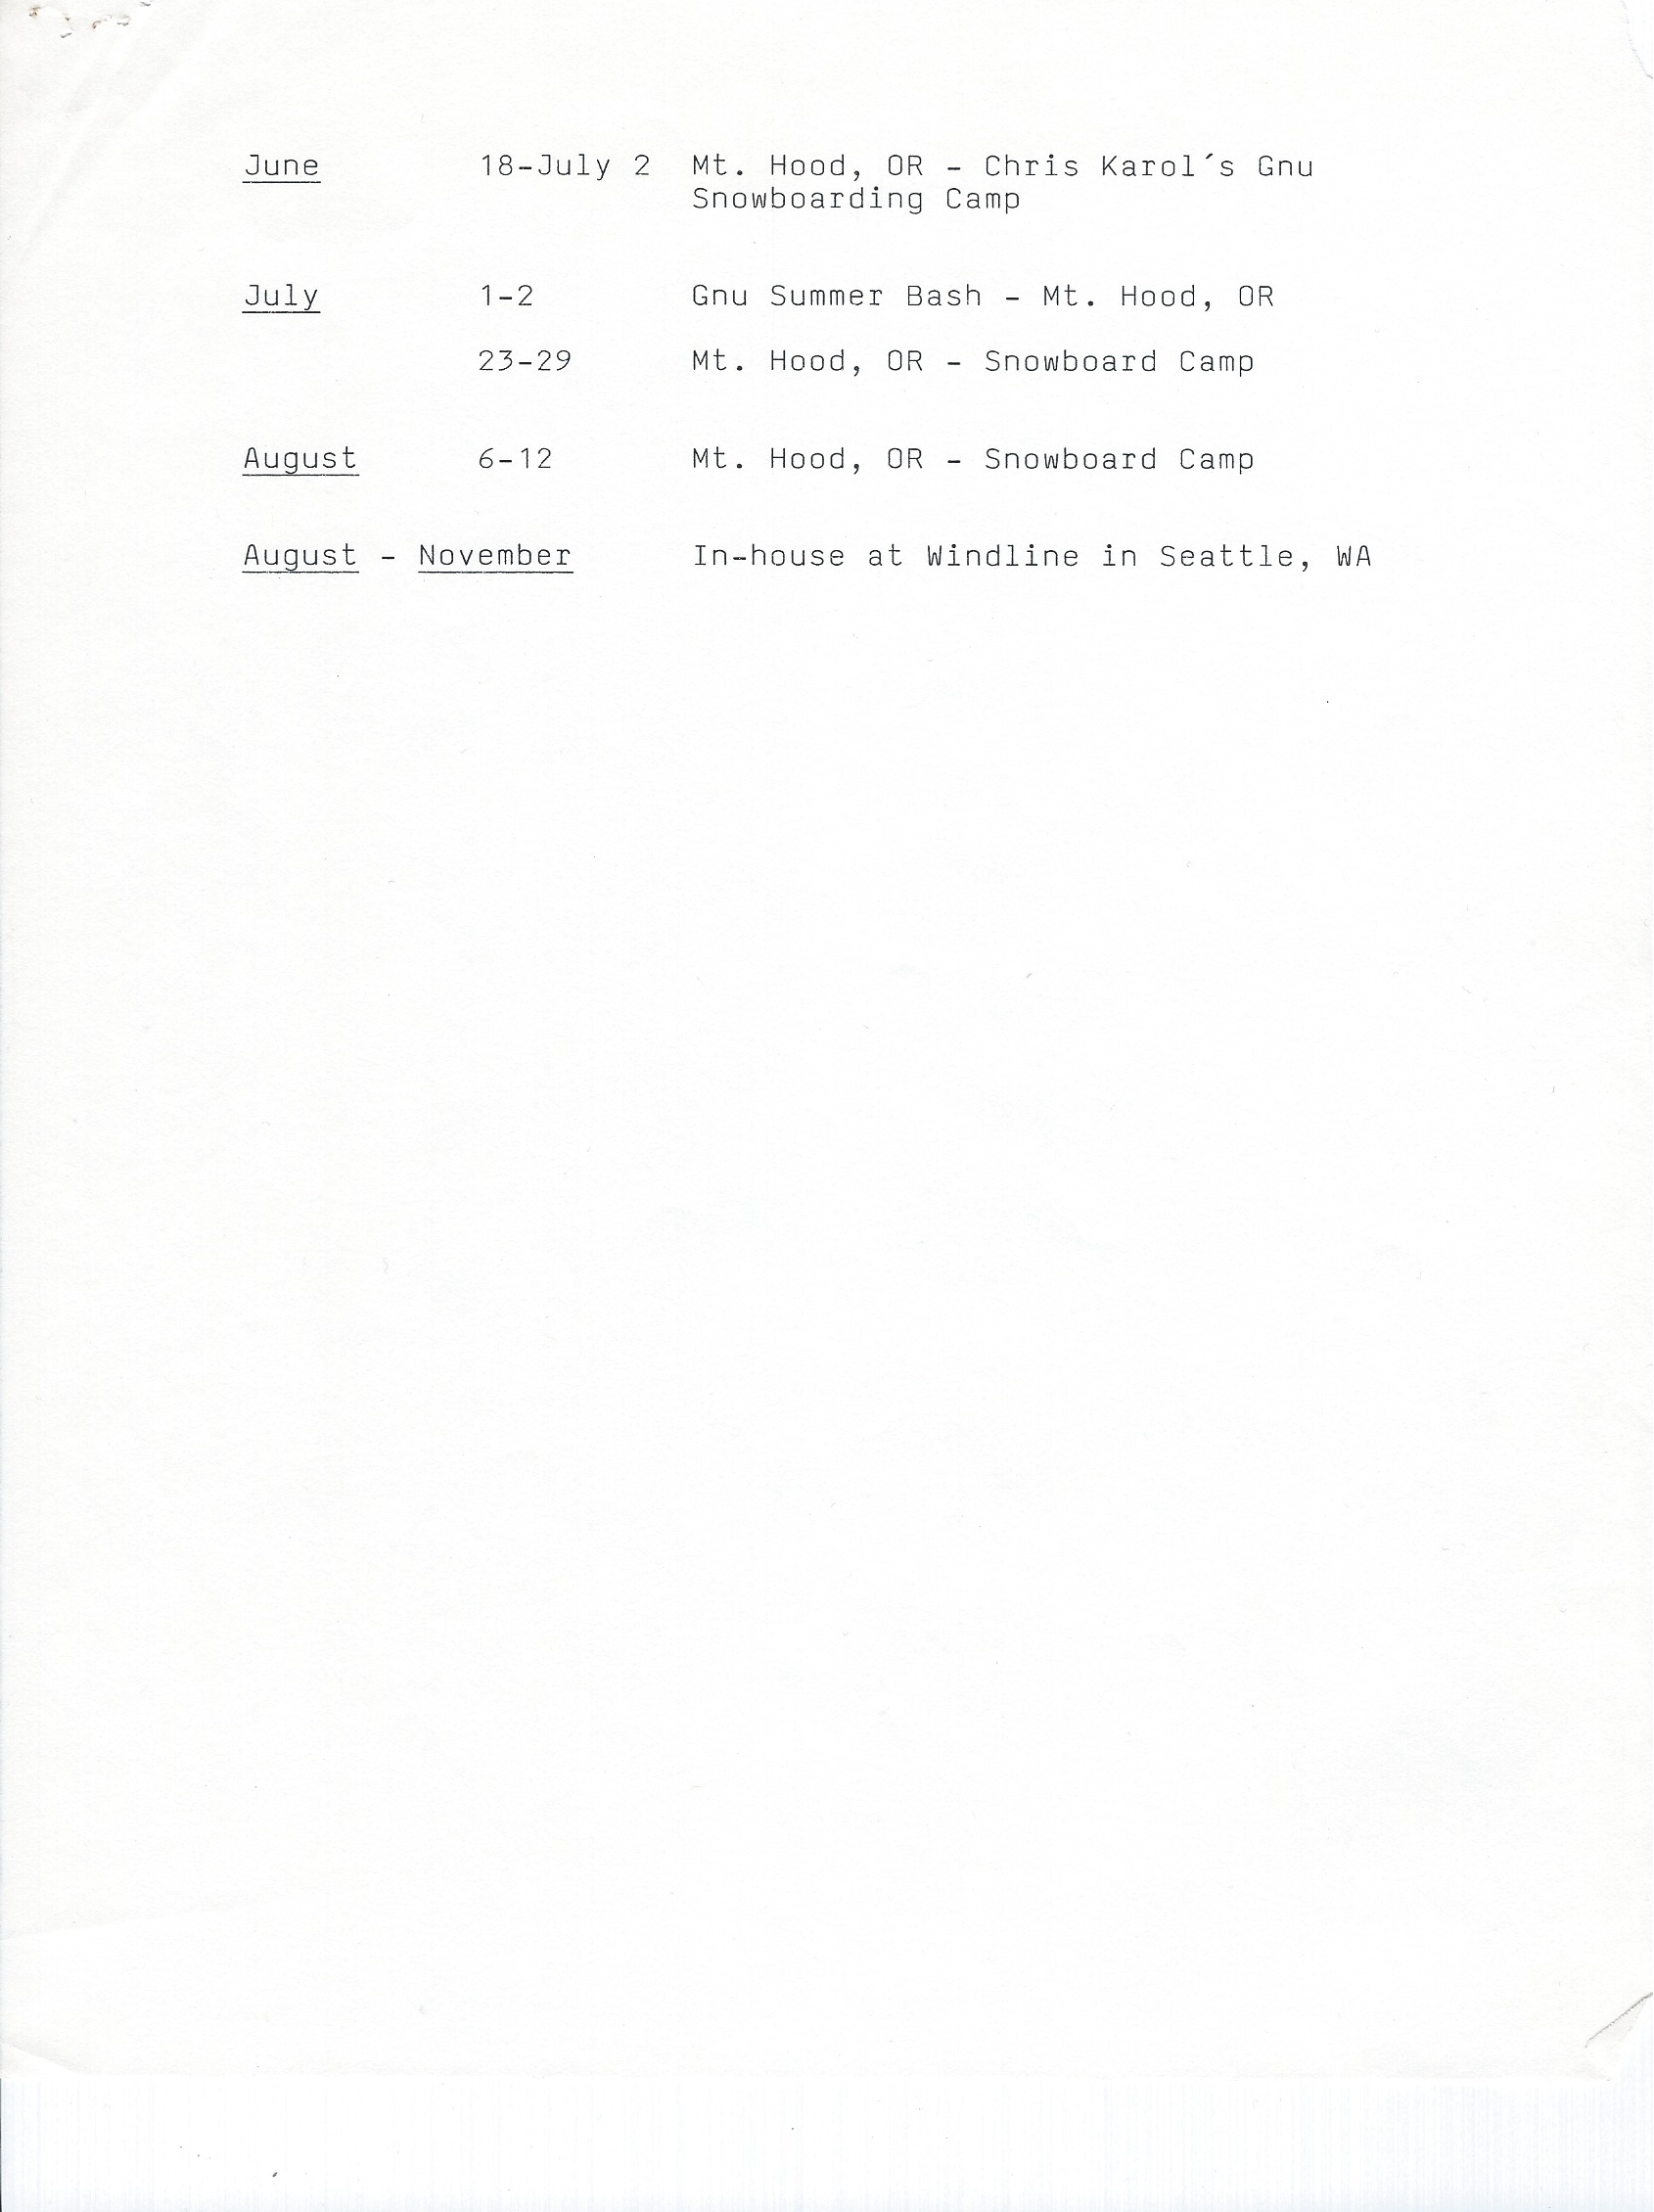 88-89 Schedule 2.jpg